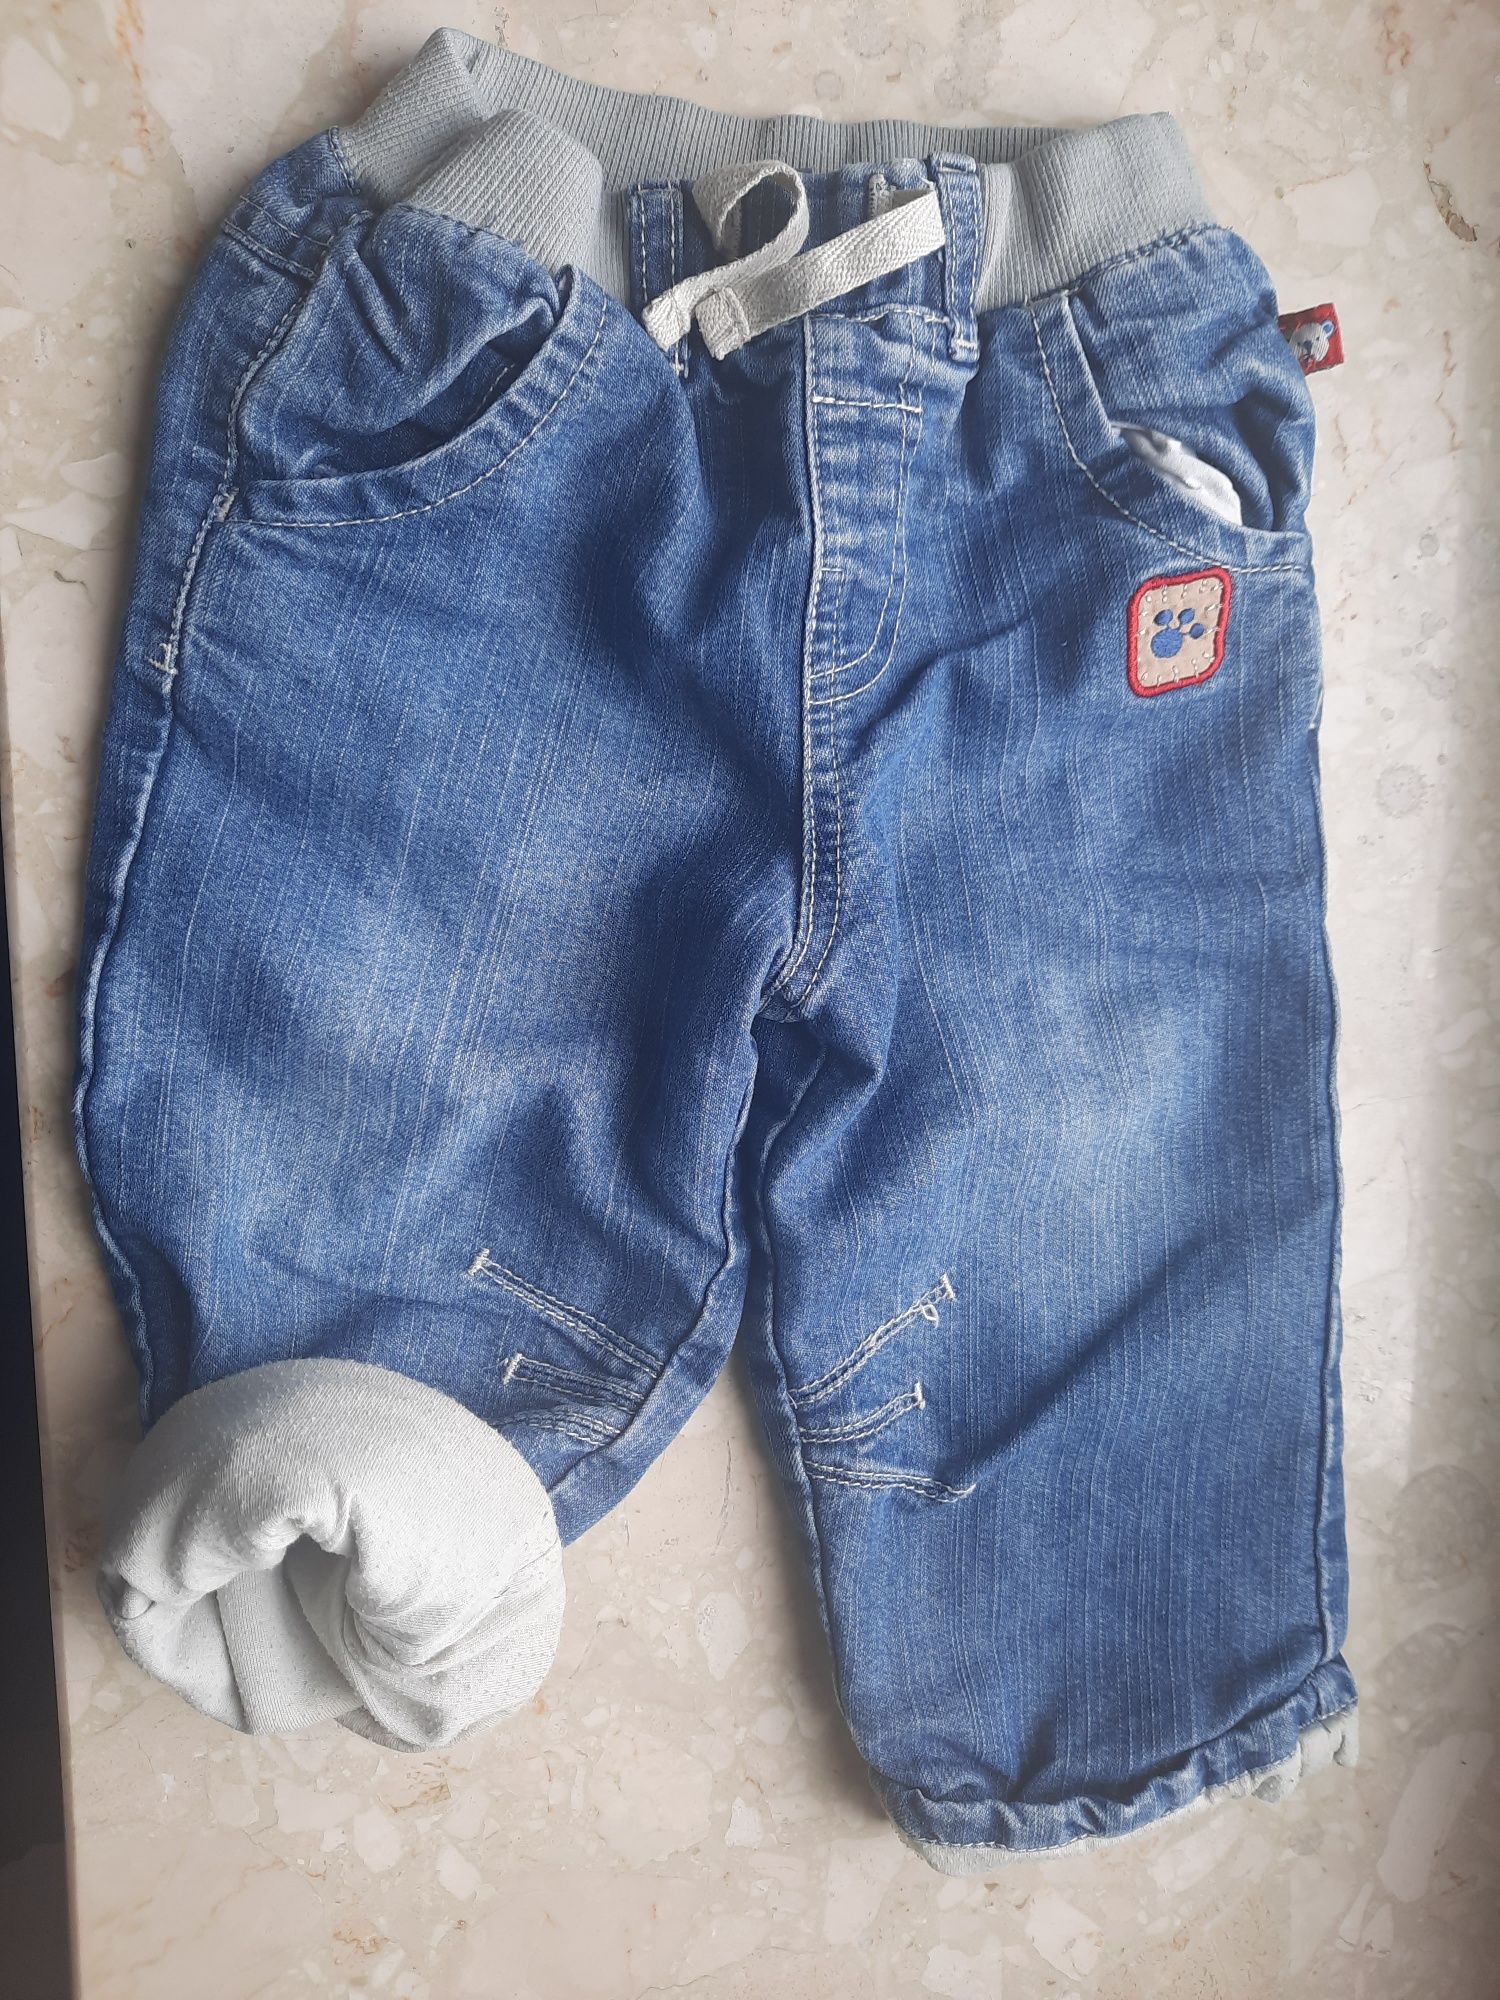 Spodnie jeansowe ocieplane dla chłopca TU r. 74-80